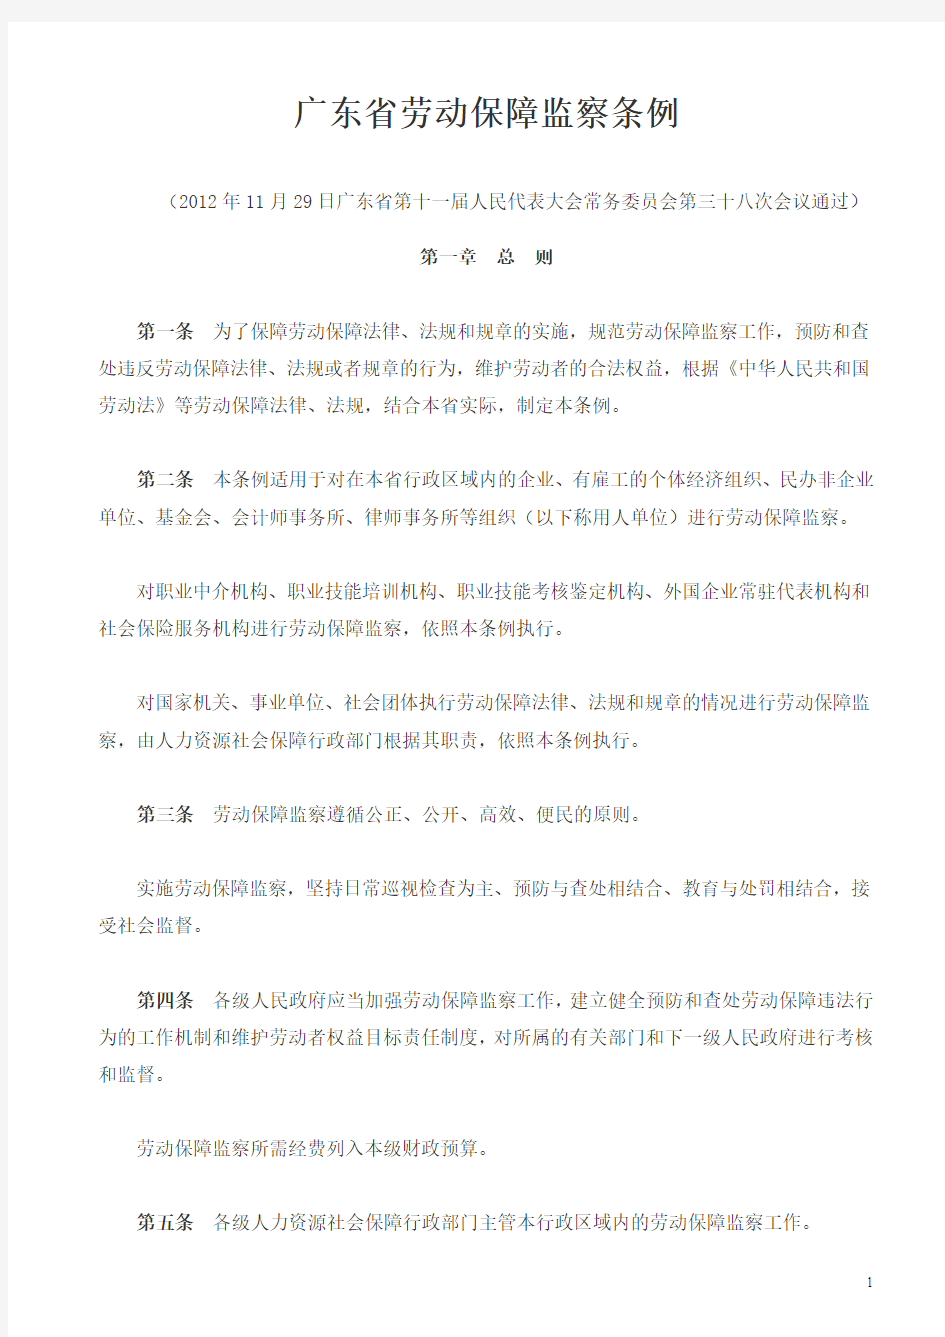 《广东省劳动保障监察条例》(2013年5月1日起施行)